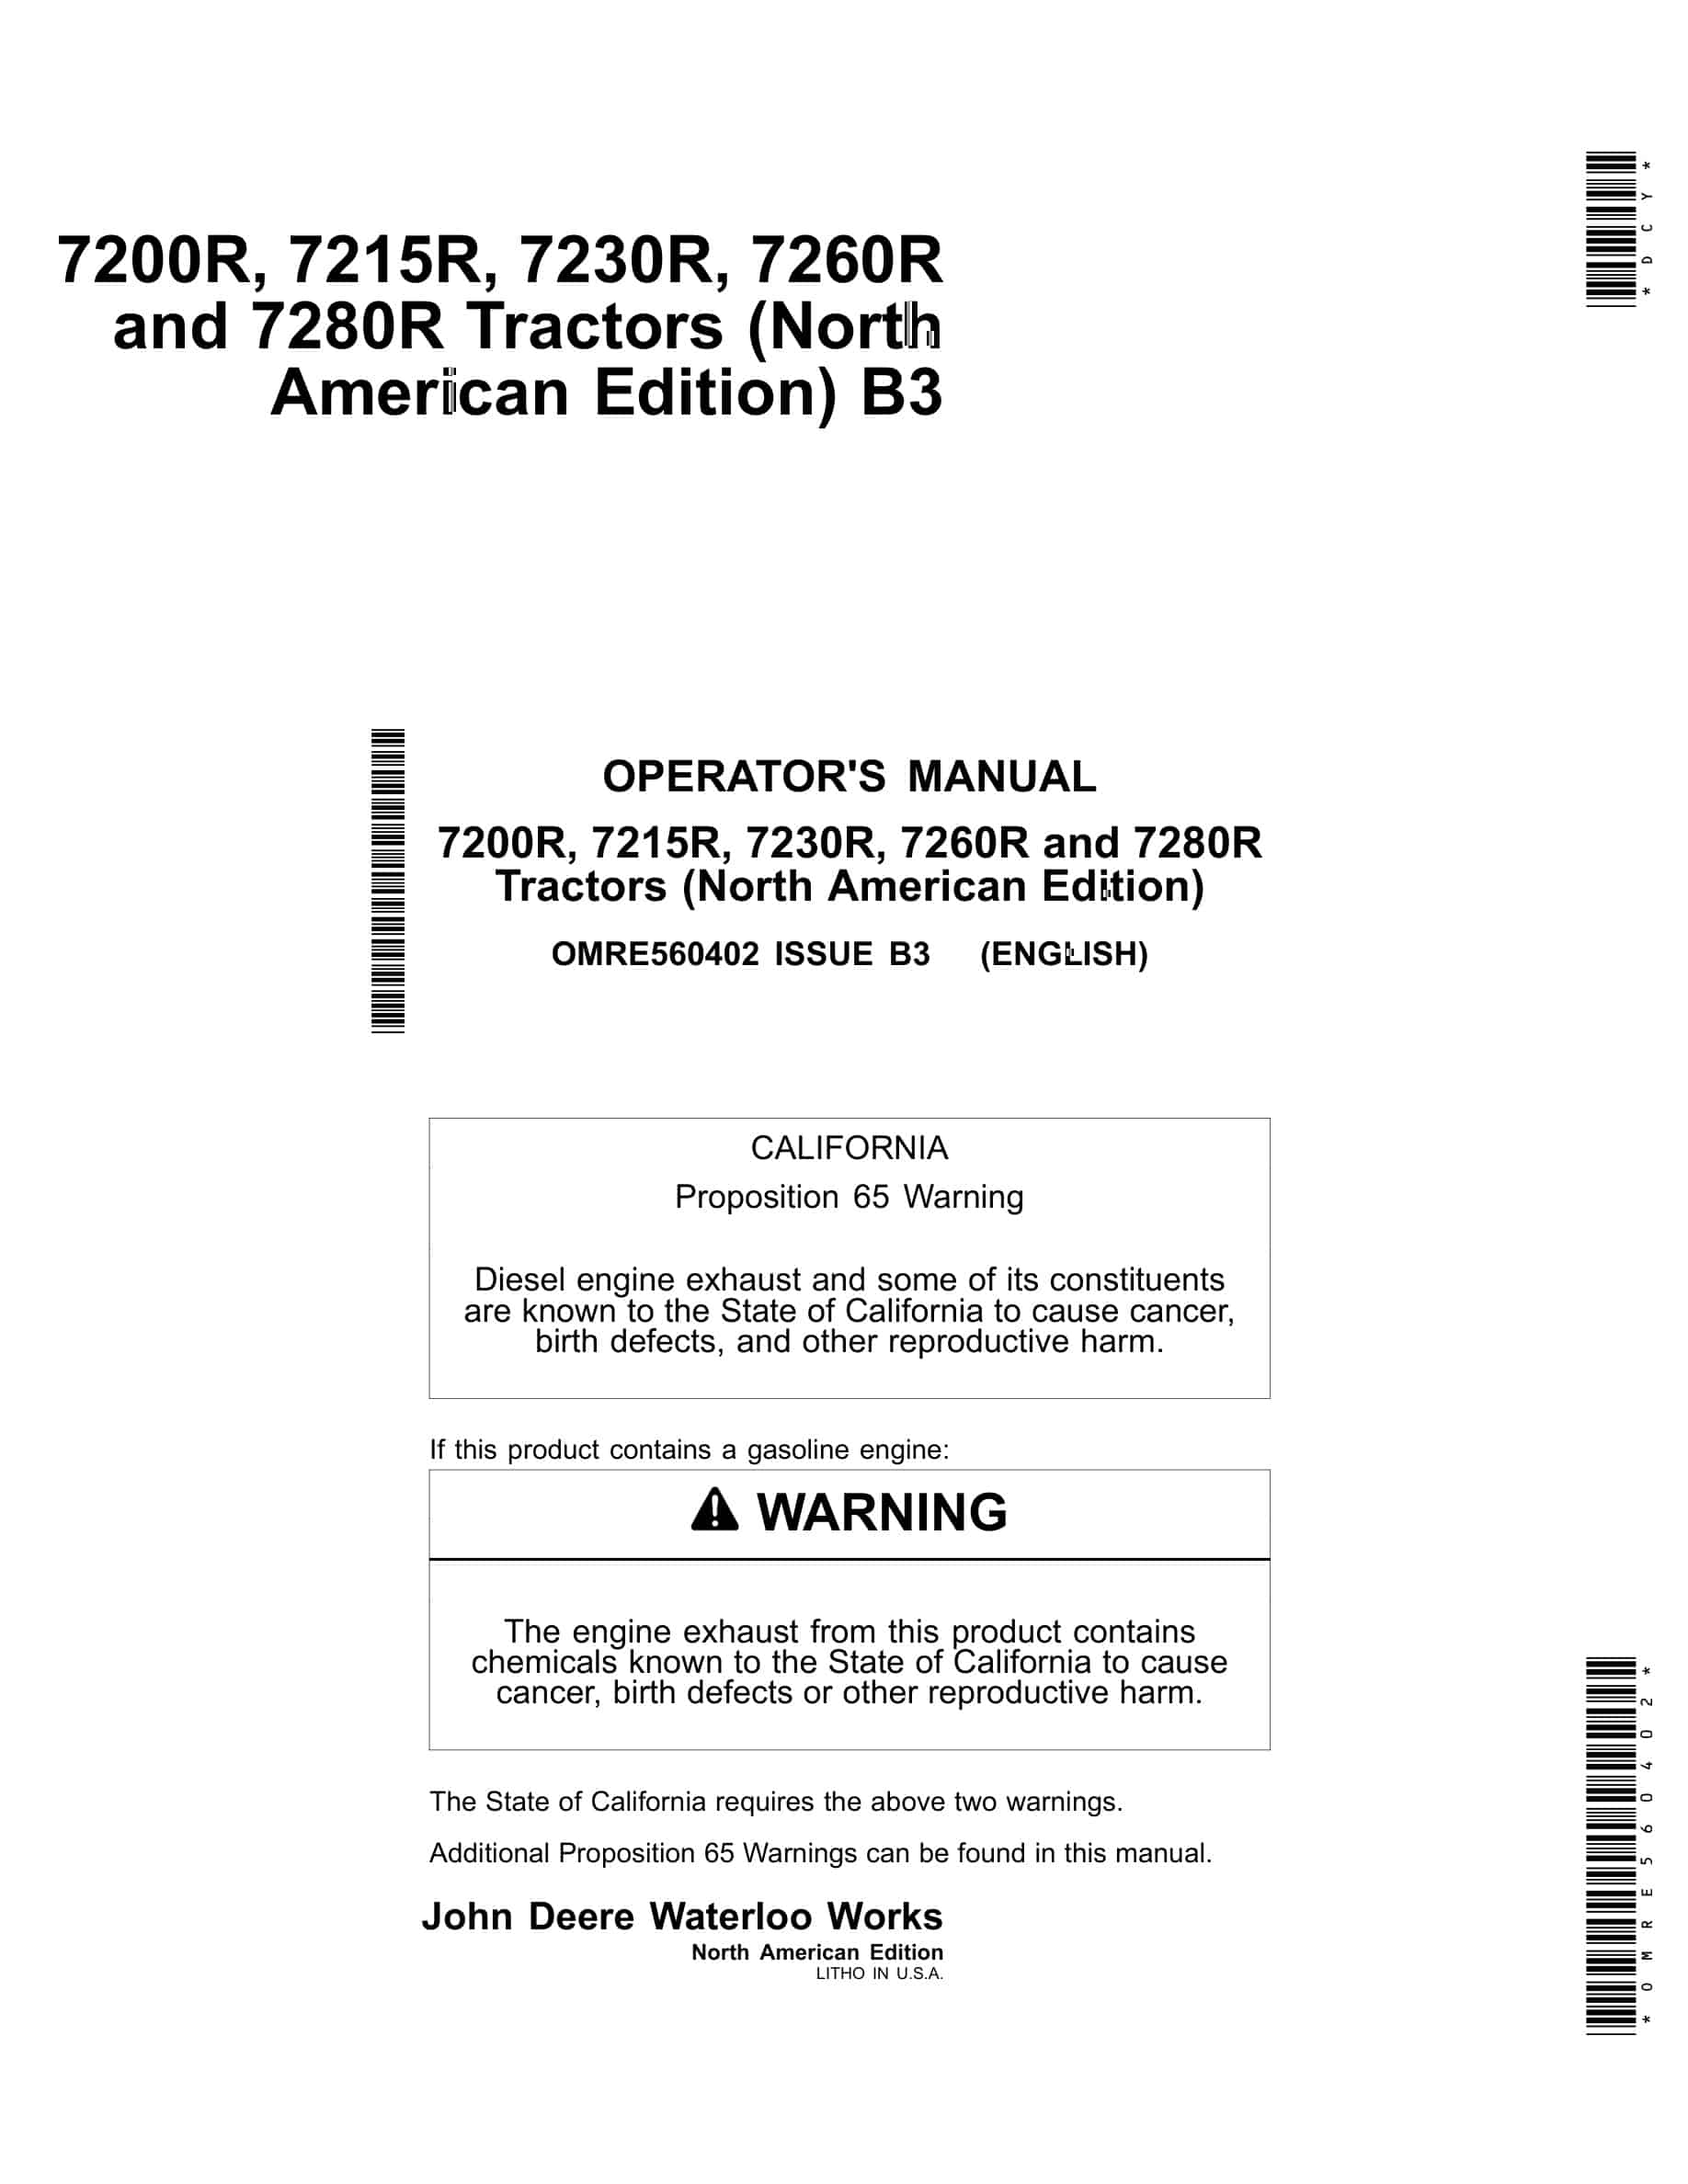 John Deere 7200R, 7215R, 7230R, 7260R and 7280R Tractor Operator Manual OMRE560402-1